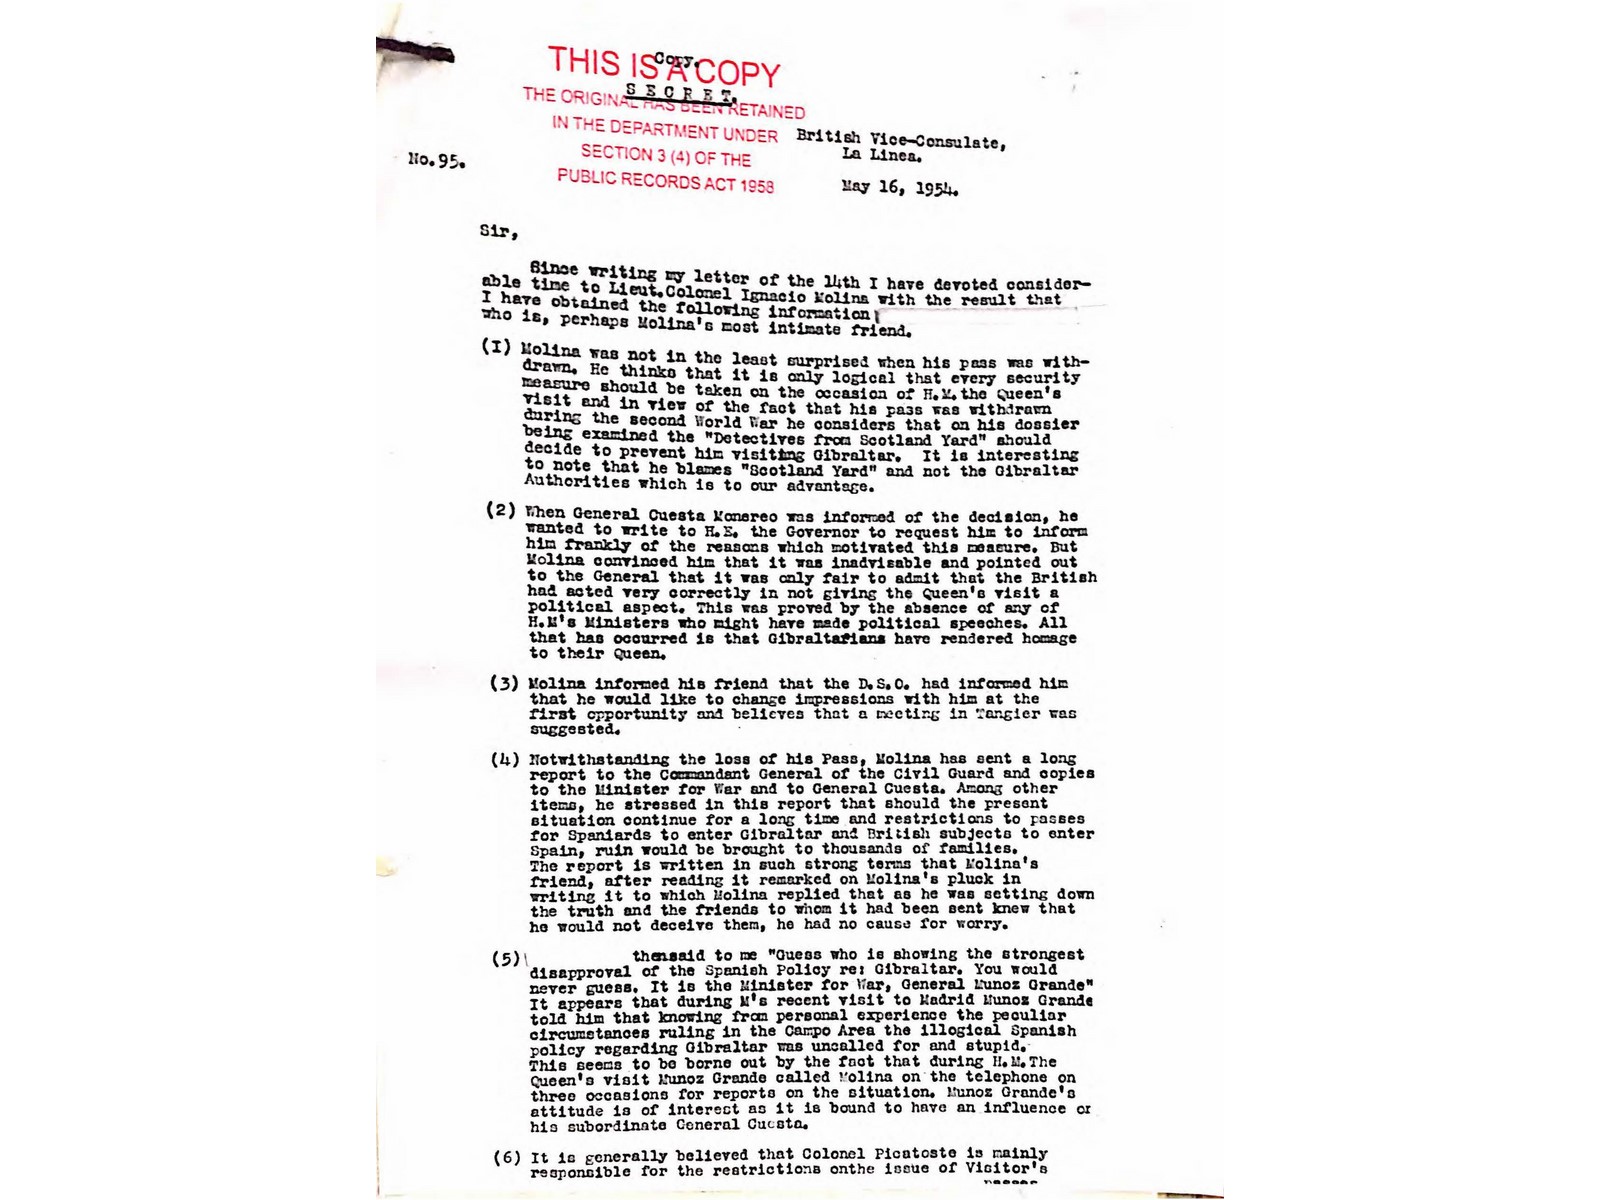 19540516 Carta del vicecónsul británico de La Línea_Página_1.jpg